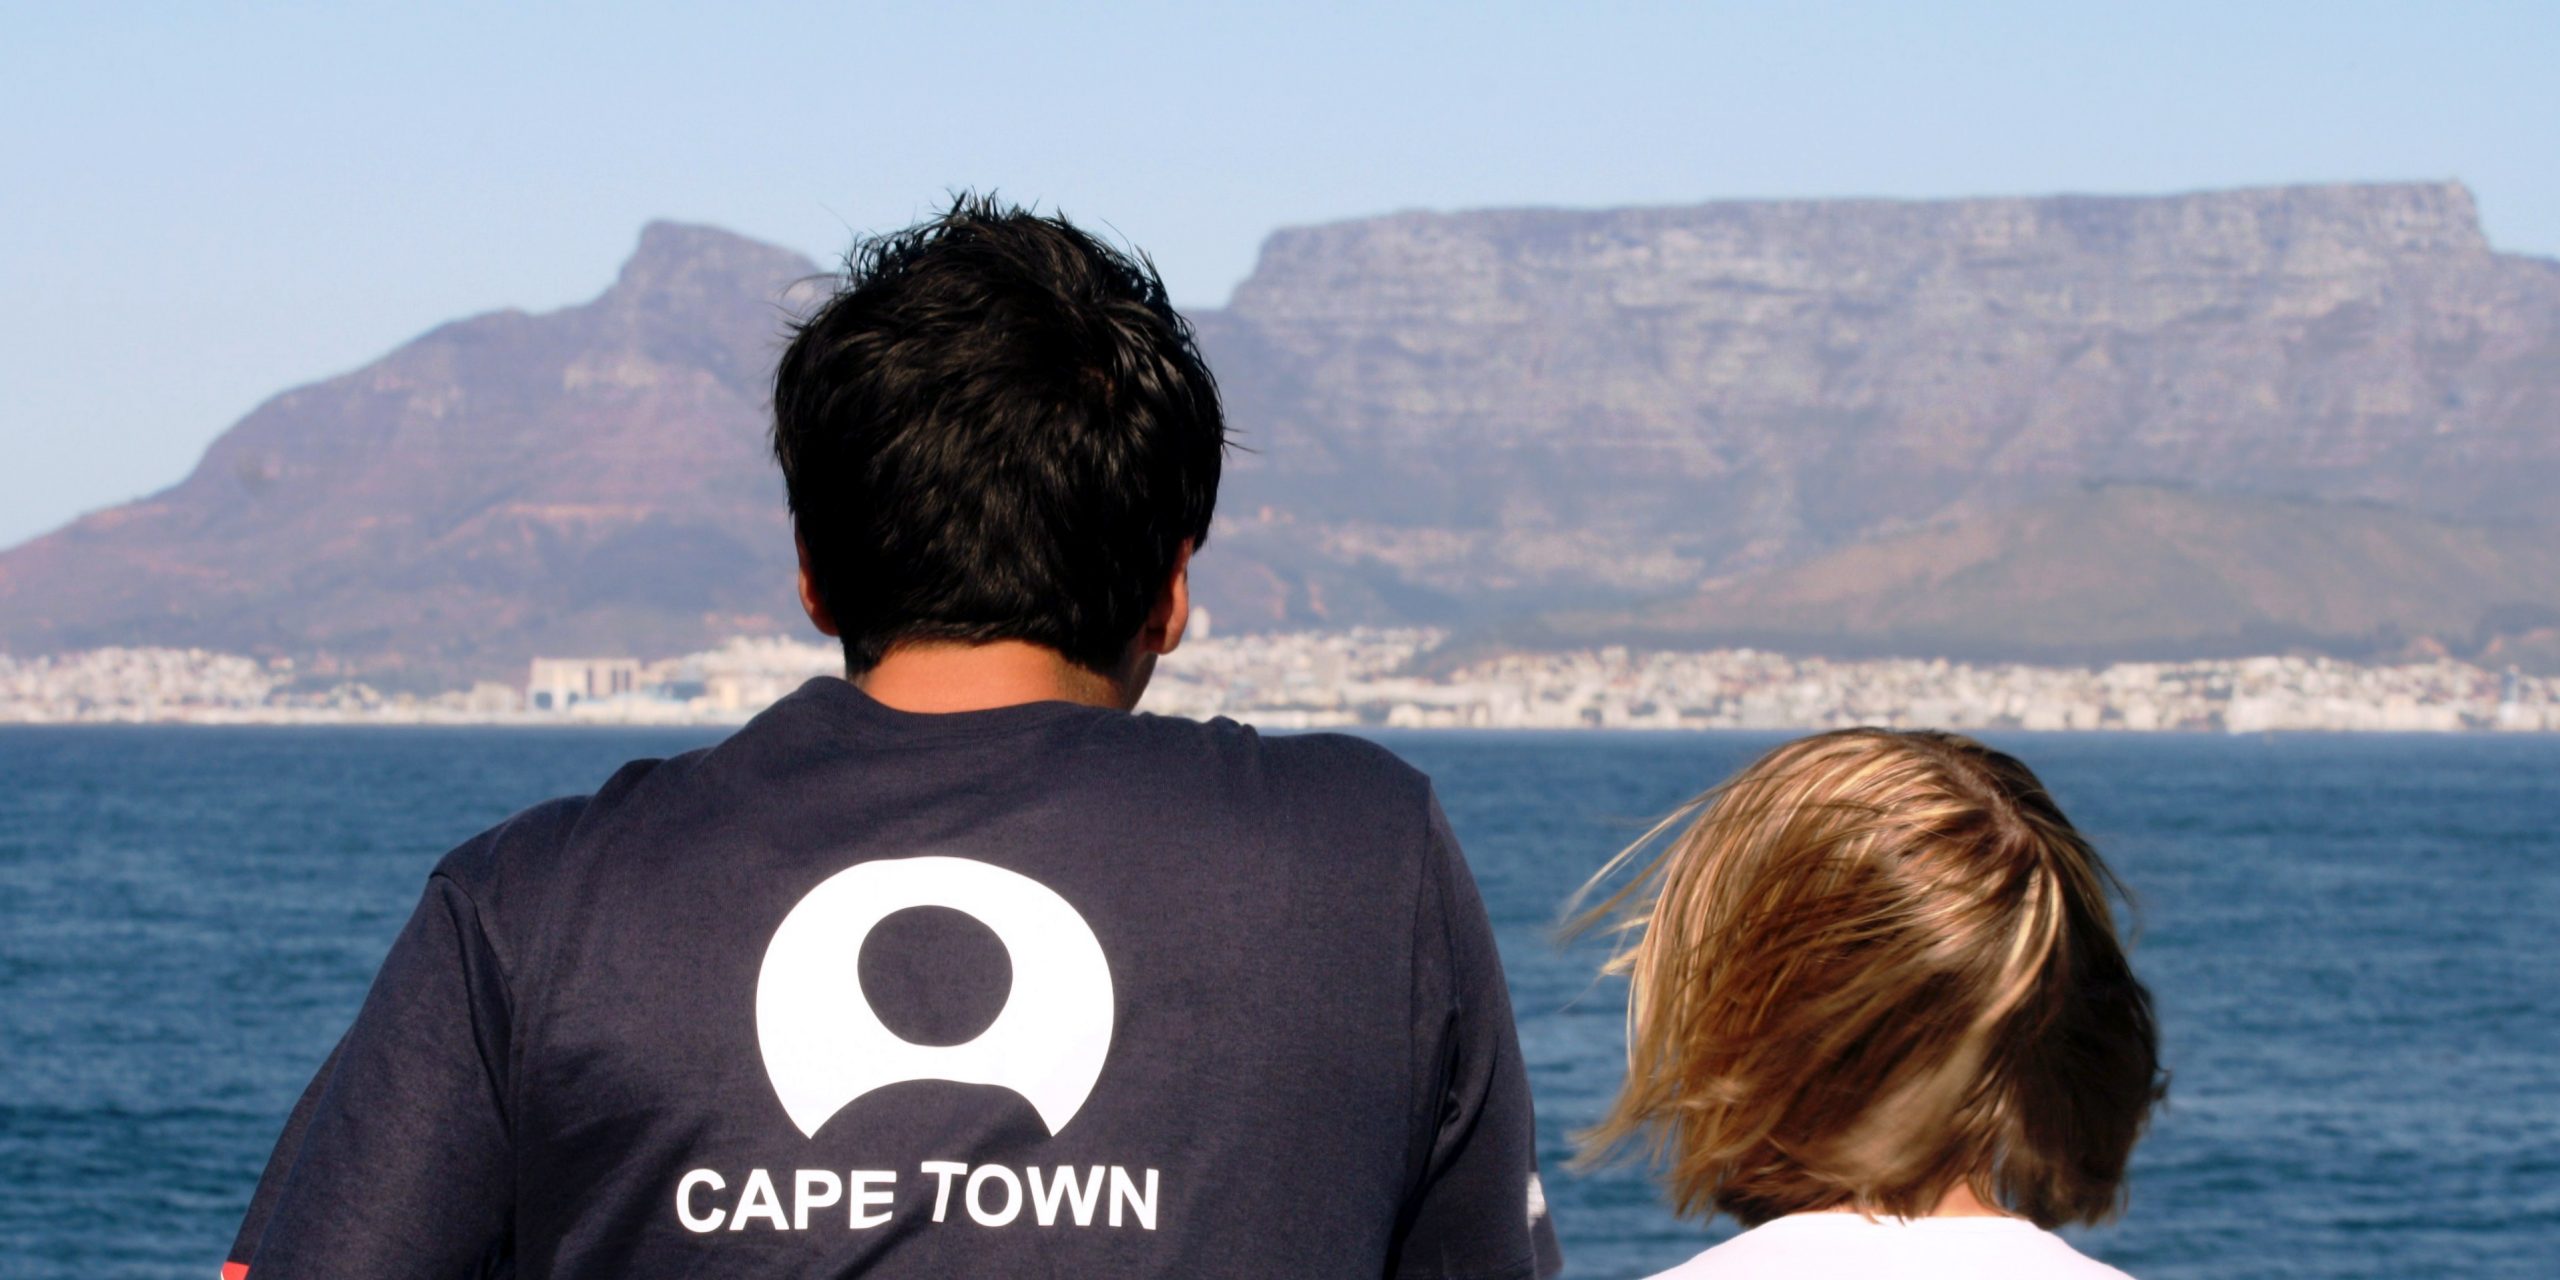 GVI participants visit Cape Town as part of a responsible travel program